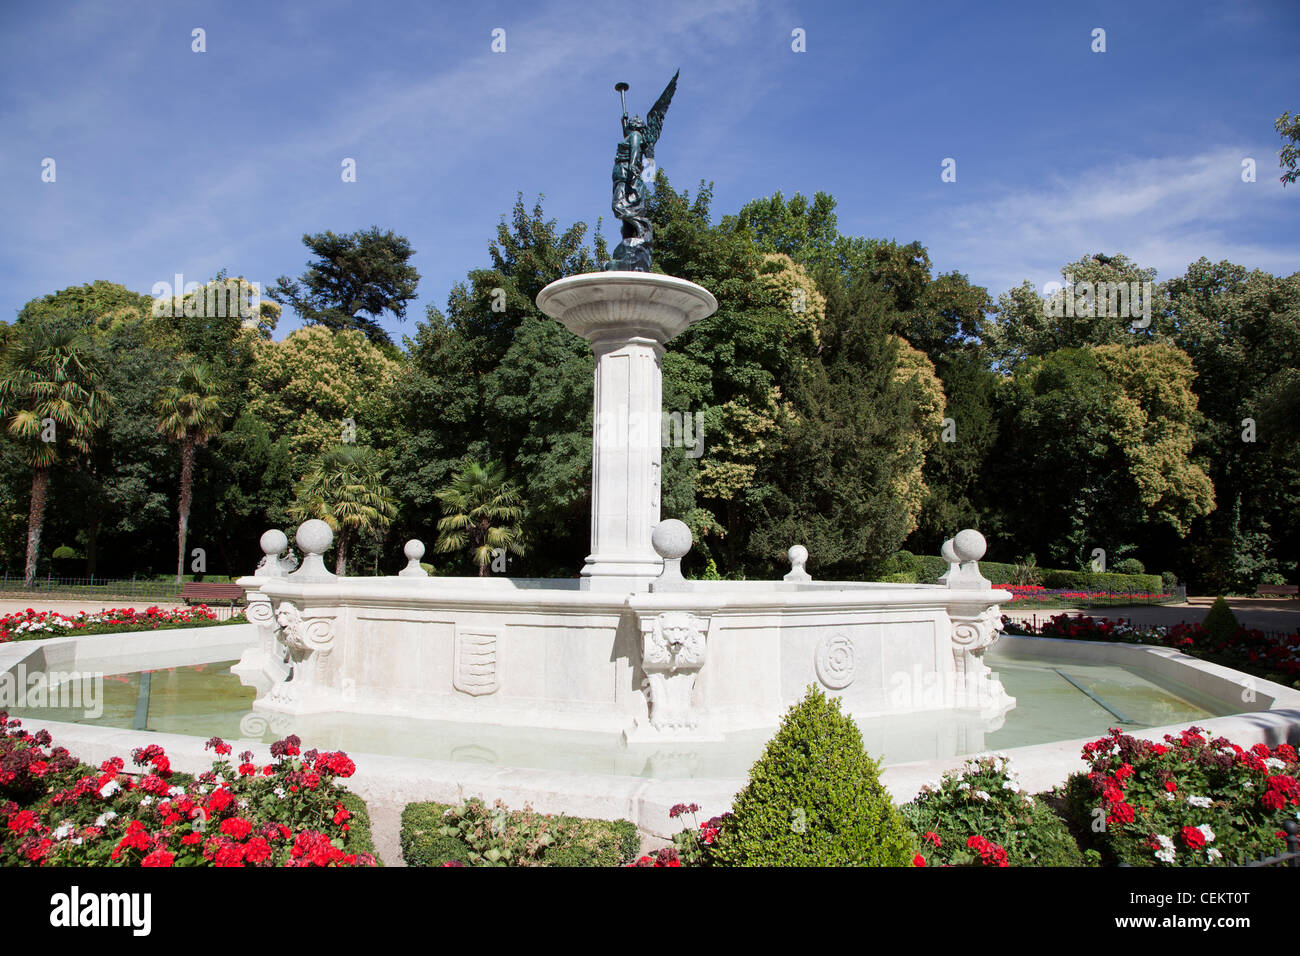 L'Espagne, Valladolid, jardins botaniques, Fontaine Banque D'Images